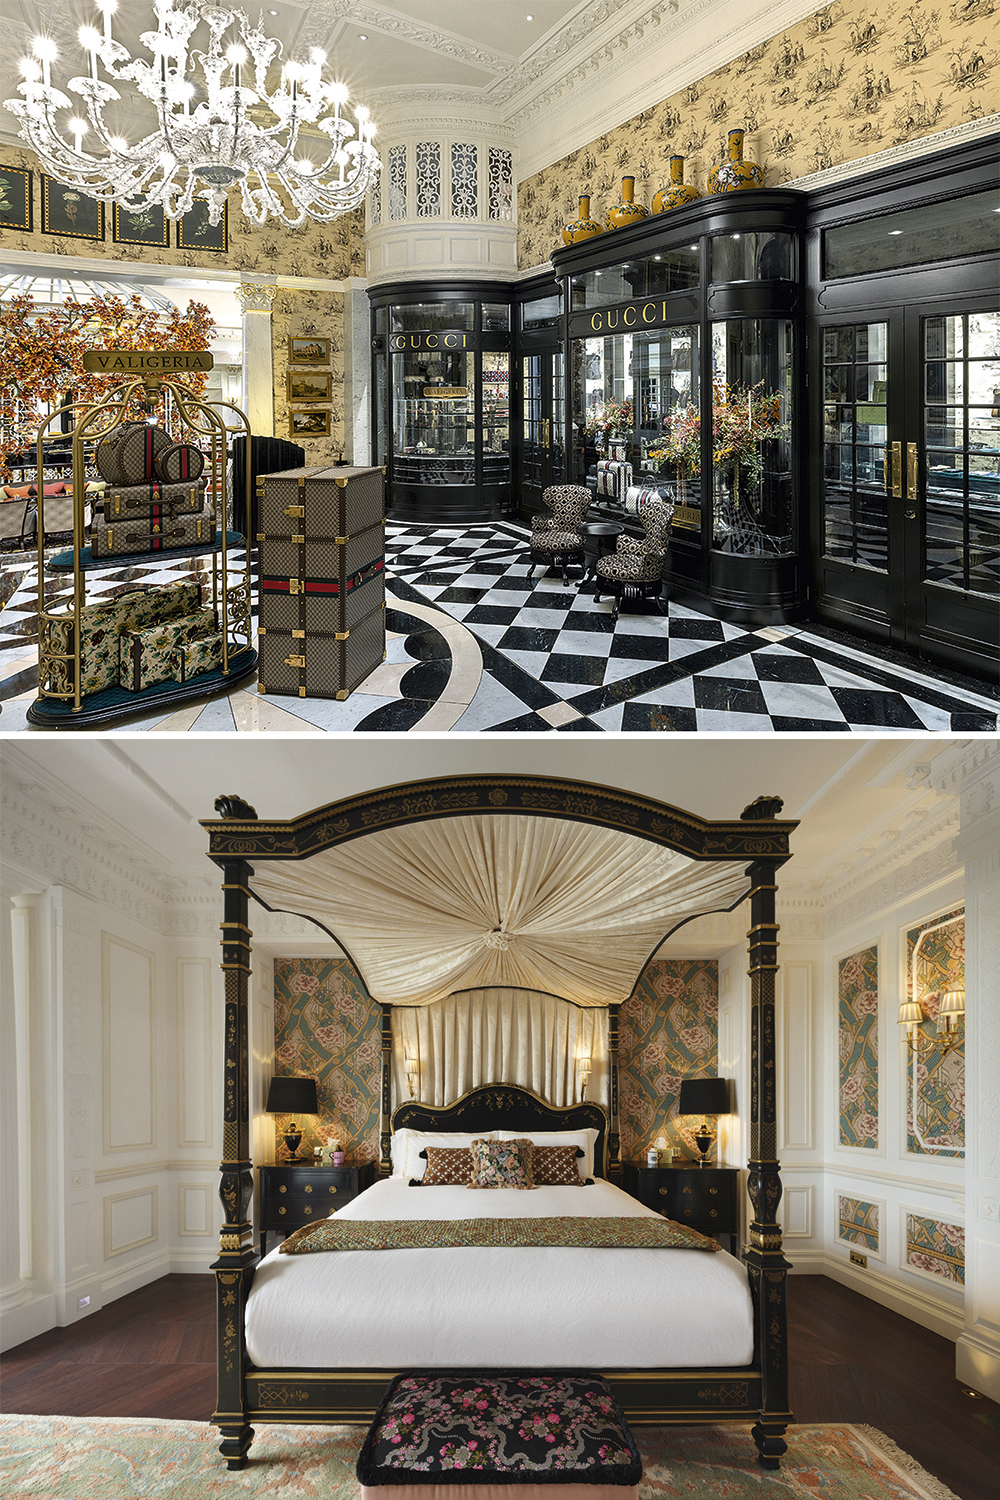 GUCCI - A grife italiana decora uma suíte de um dos mais tradicionais hotéis de Londres, o Savoy. O suntuoso quarto tem móveis, acessórios e objetos decorativos da marca.